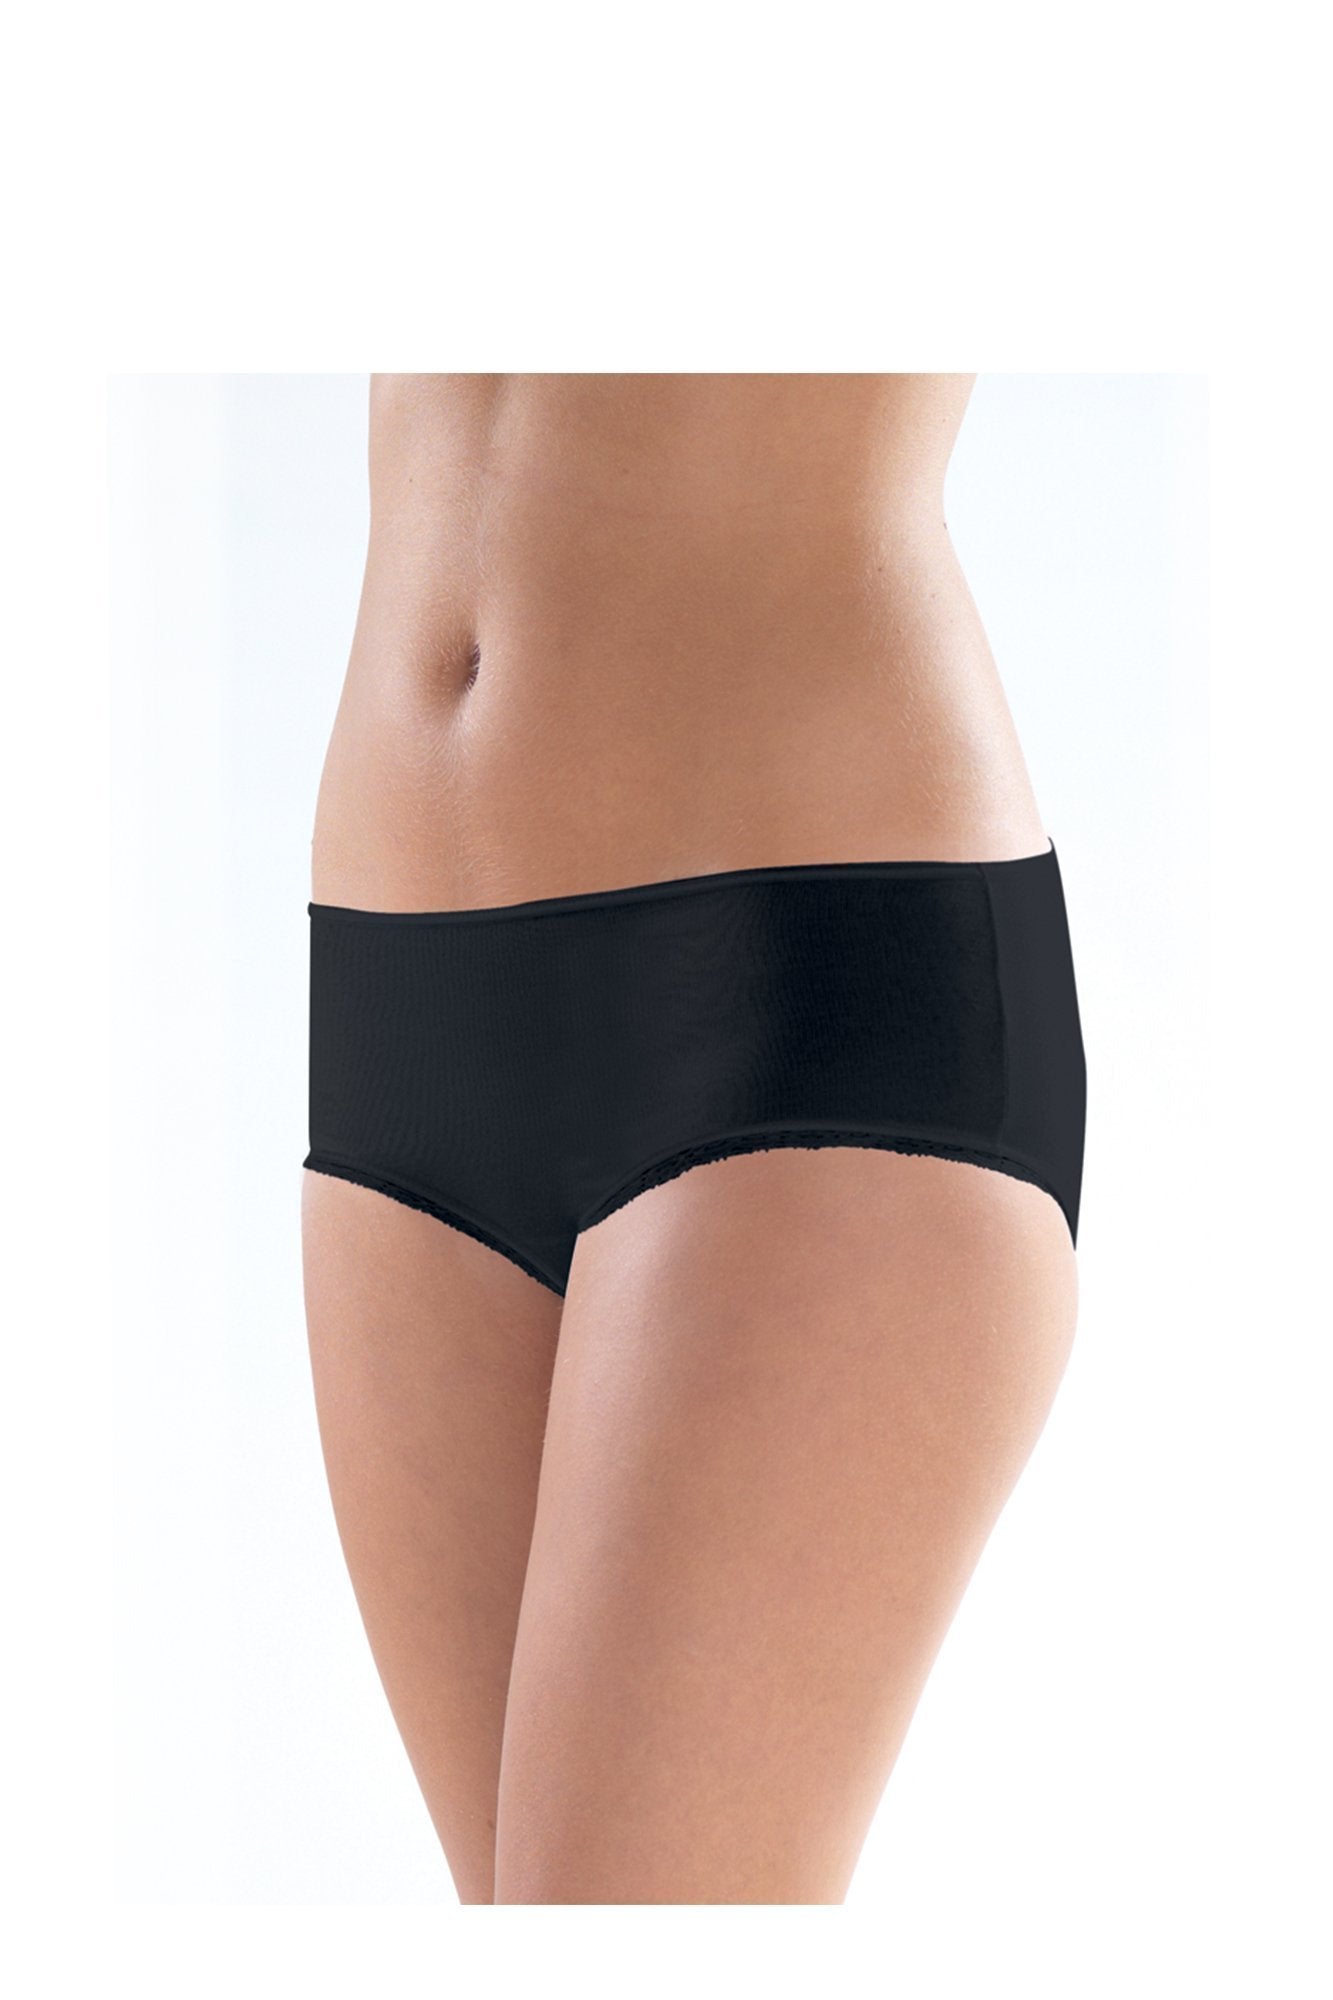 Ladies' Slip-1363 underwear blackspade Black L 46% Modal 46% Cotton 8% Elastane